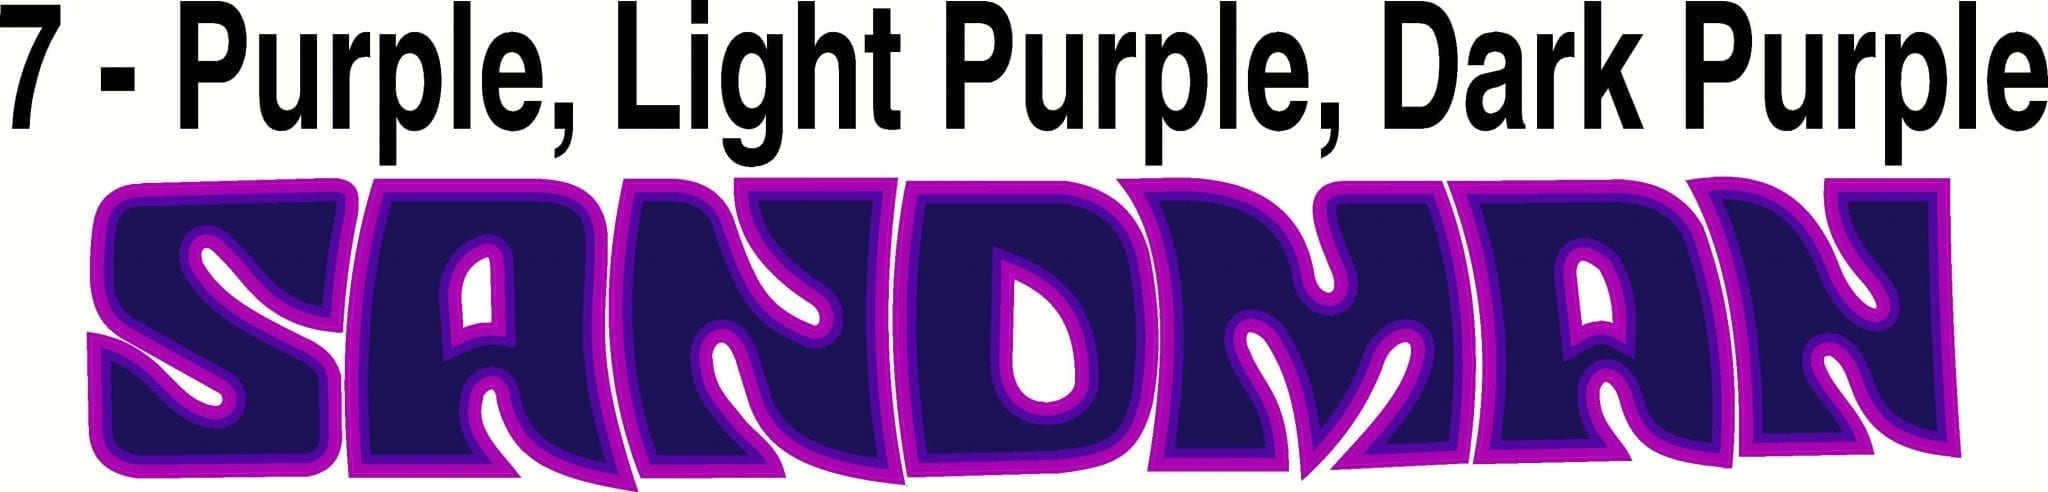 sandman purple light purple dark purple